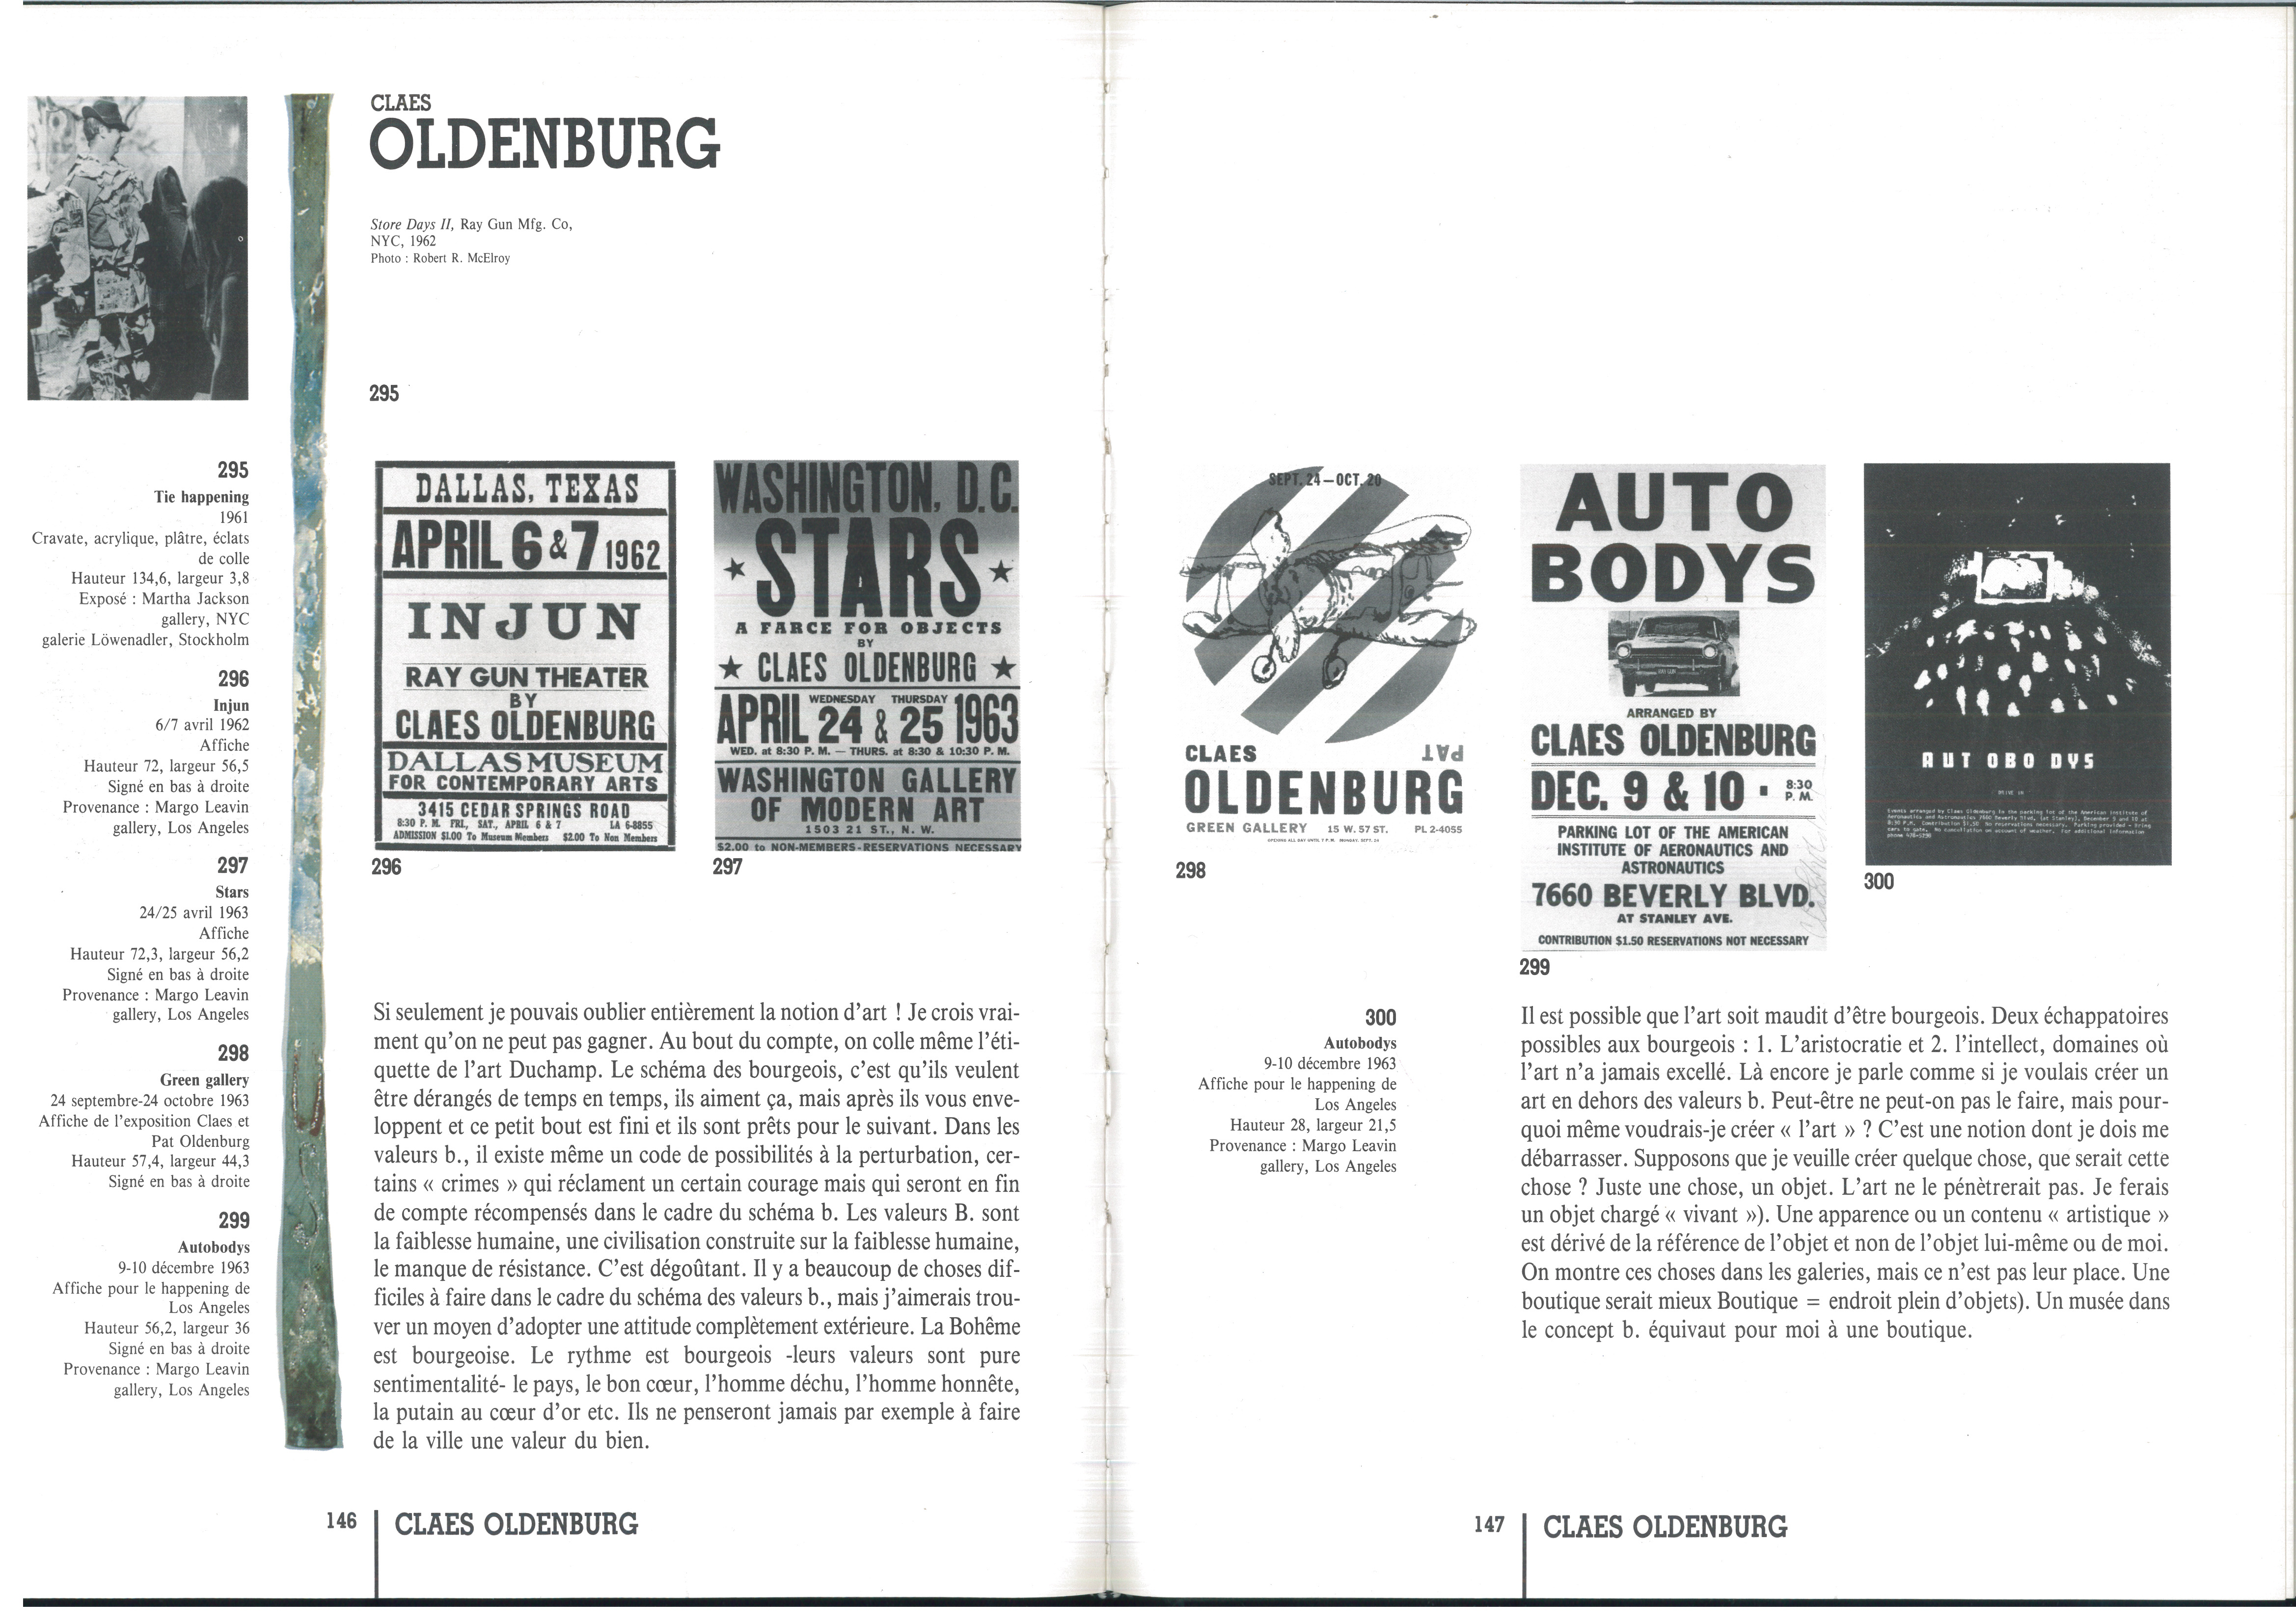 8-3-Affiches-de-Claes-Oldenburg-pages-146-147-du-catalogue-Happenings-Fluxus-Paris-Galerie-1900-2000-Galerie-du-genie-1989